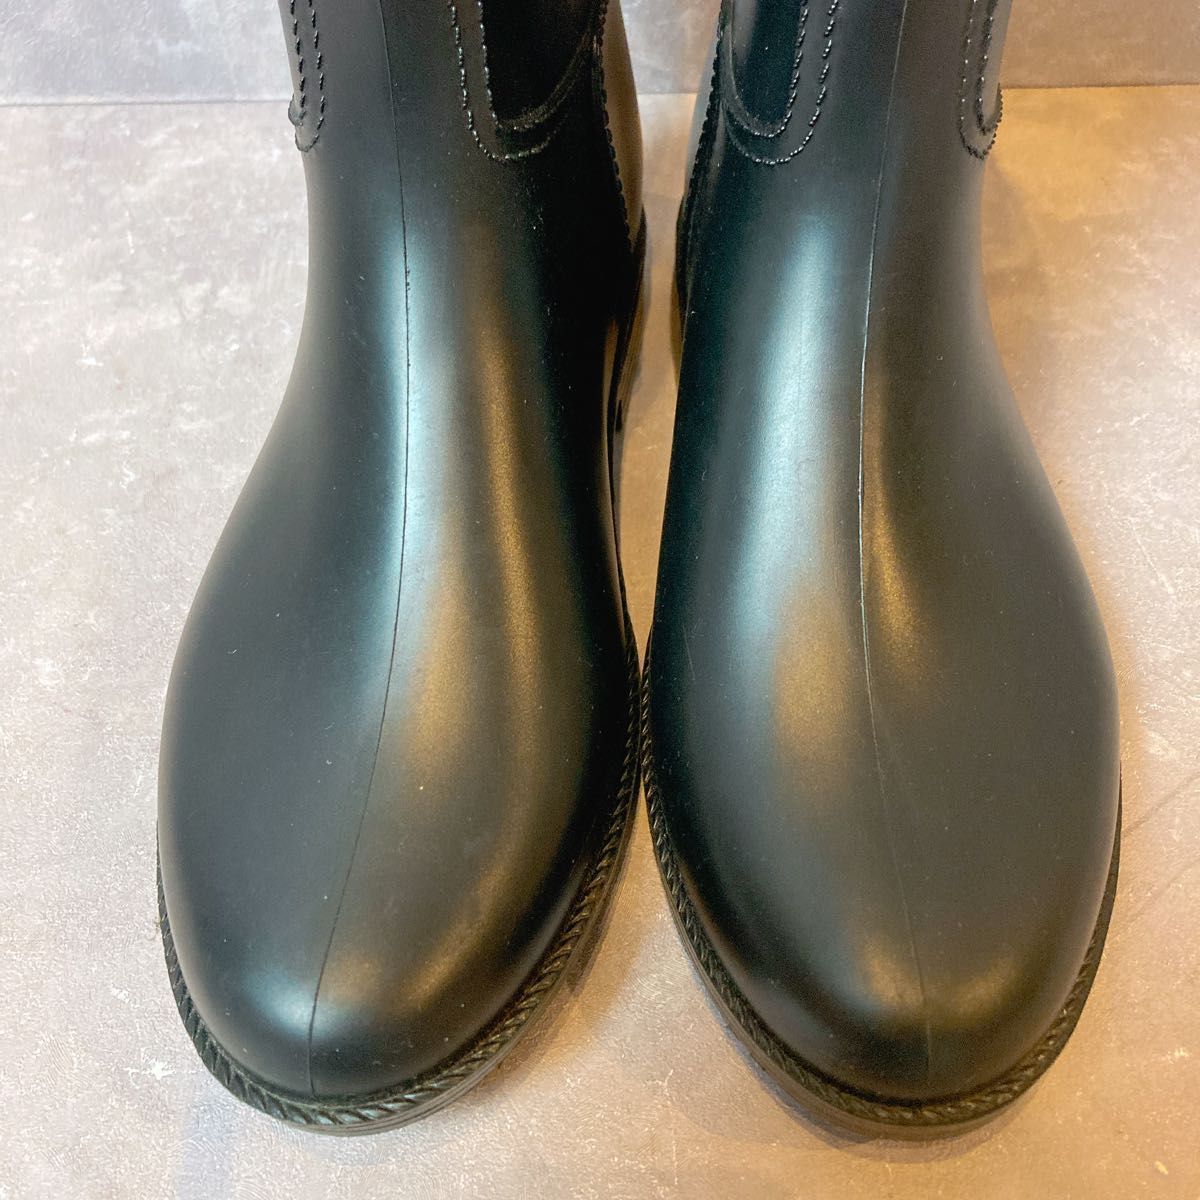 joru geo Armani rain boots boots black black long boots Armani stylish rain boots stylish boots waterproof rain shoes 